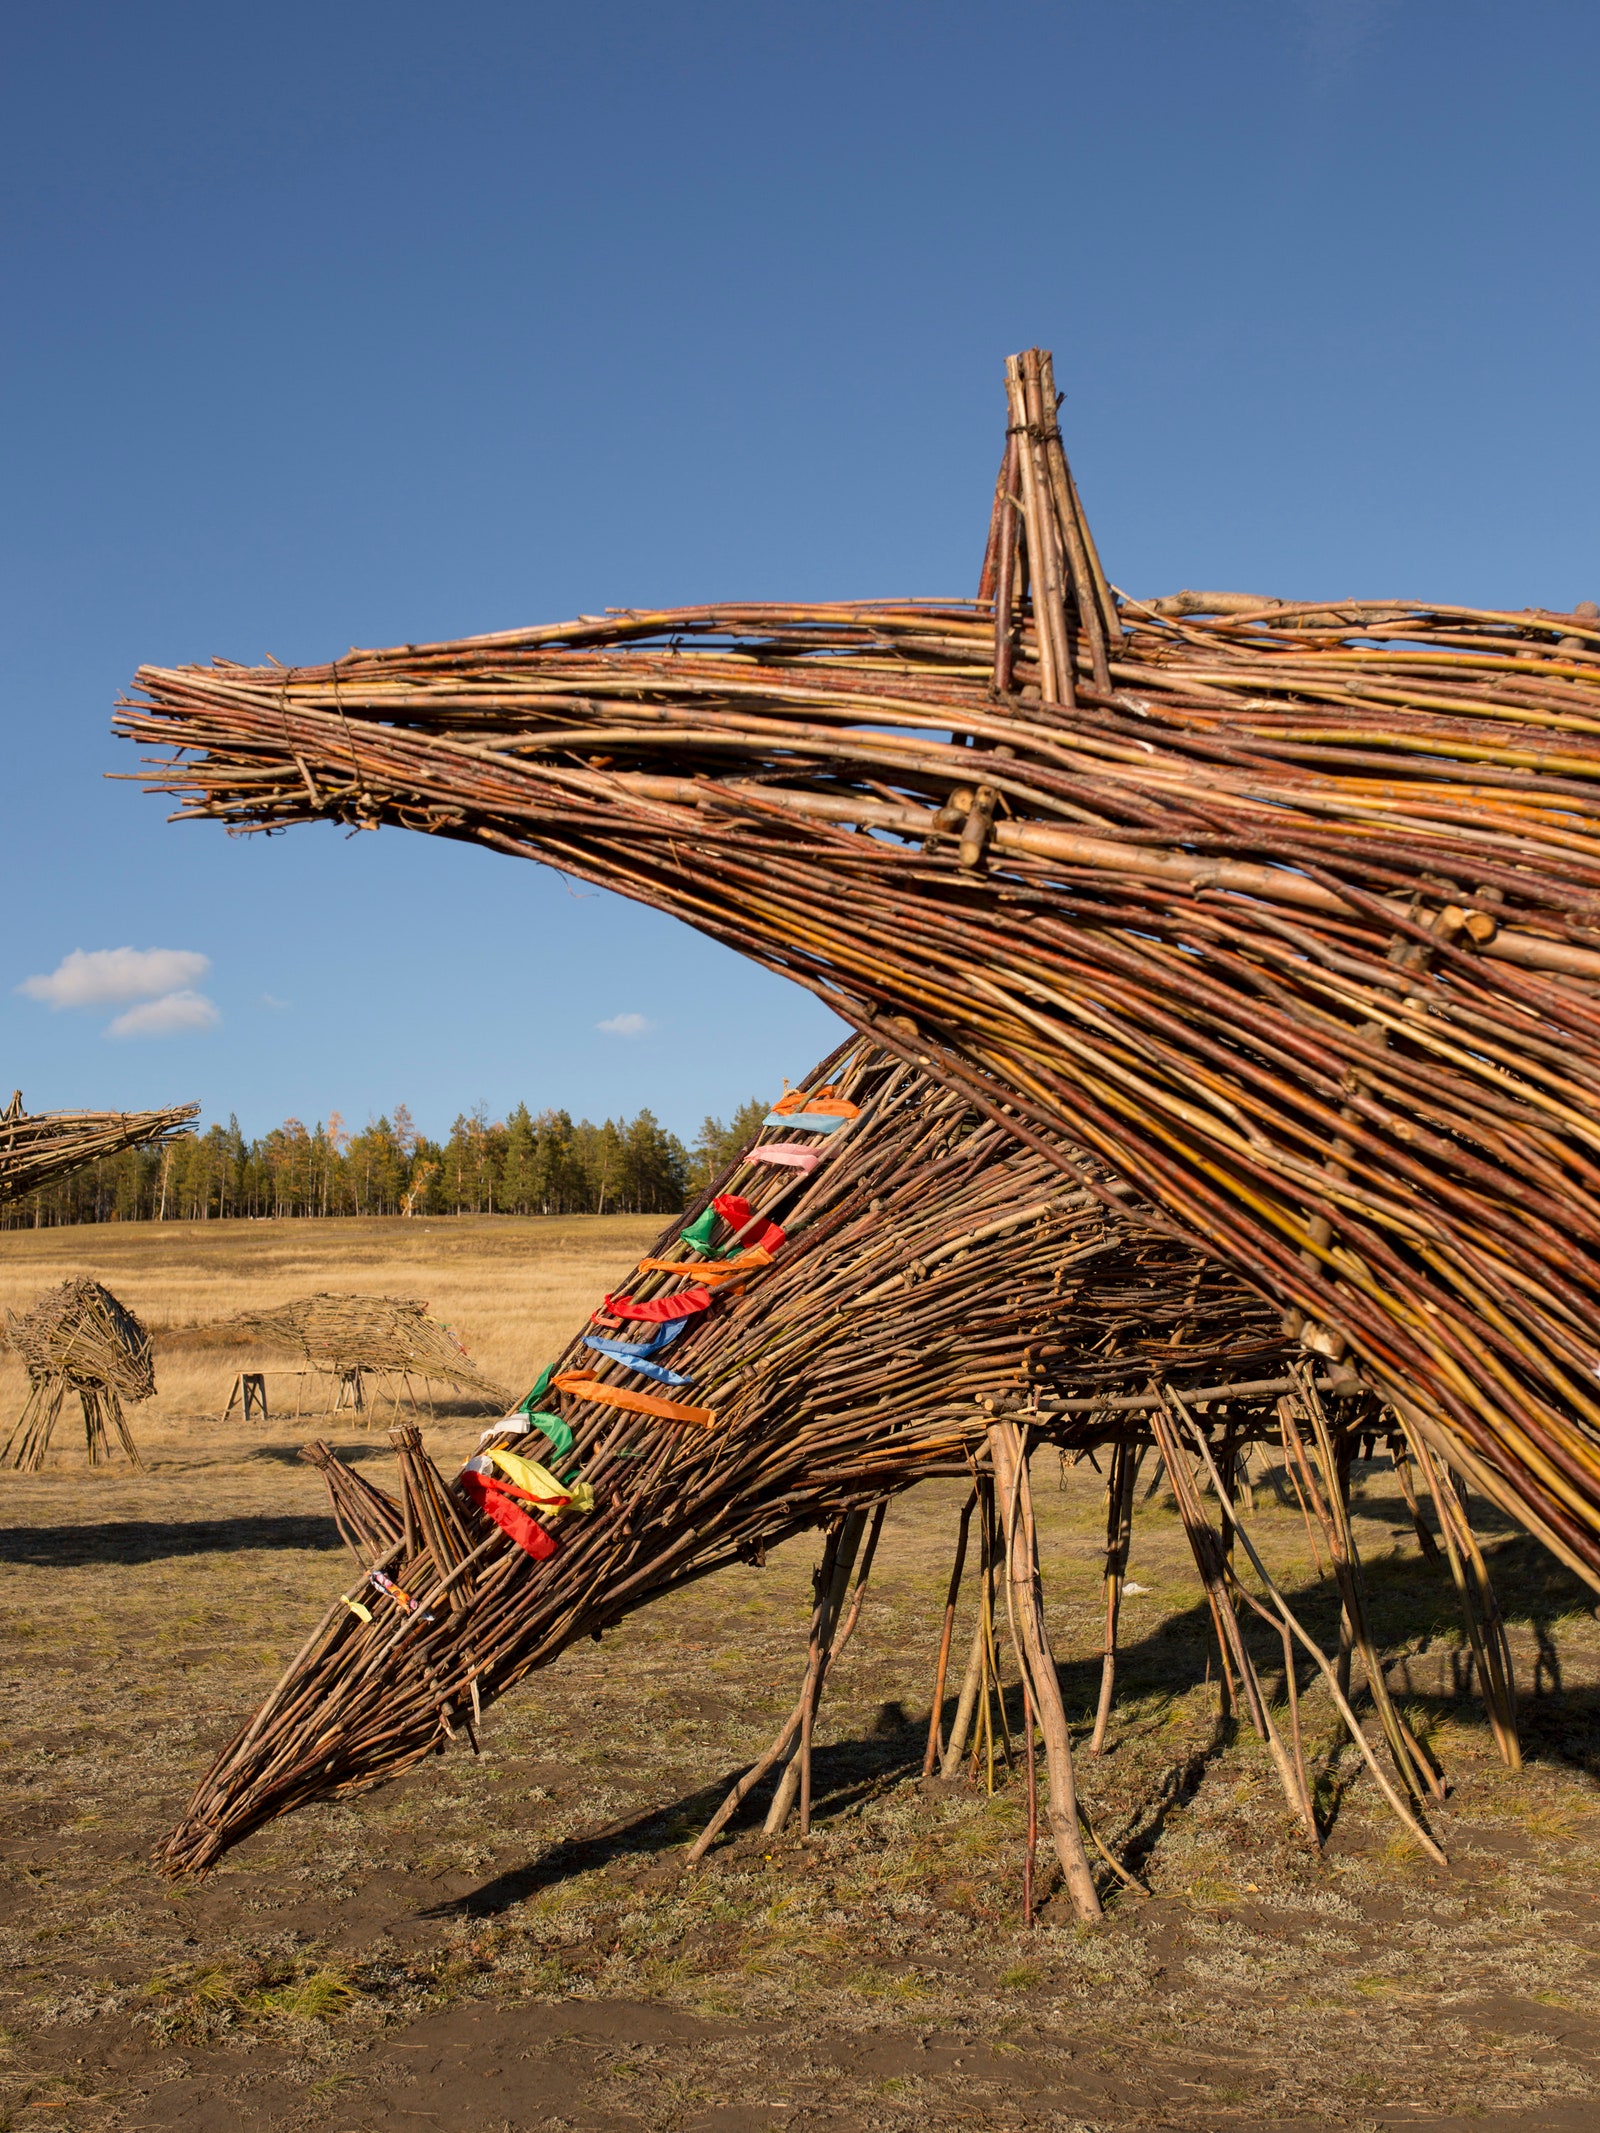 “Священный табун мифических лошадей” появился в Якутской области в 2018 году.